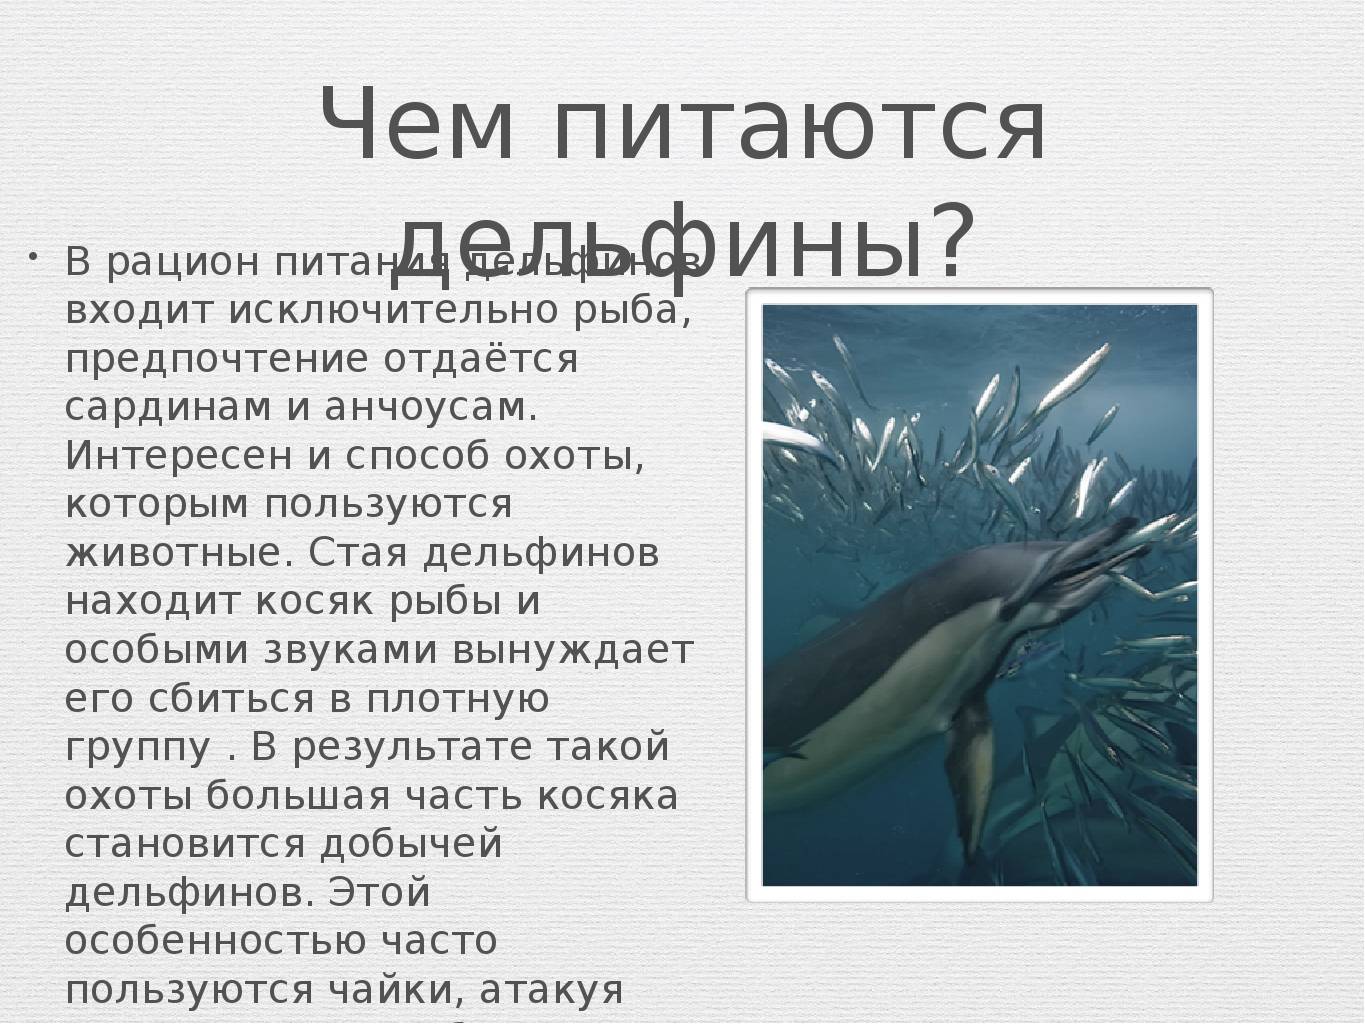 Дельфин: описание, виды, образ жизни, общение, фото, интересные факты